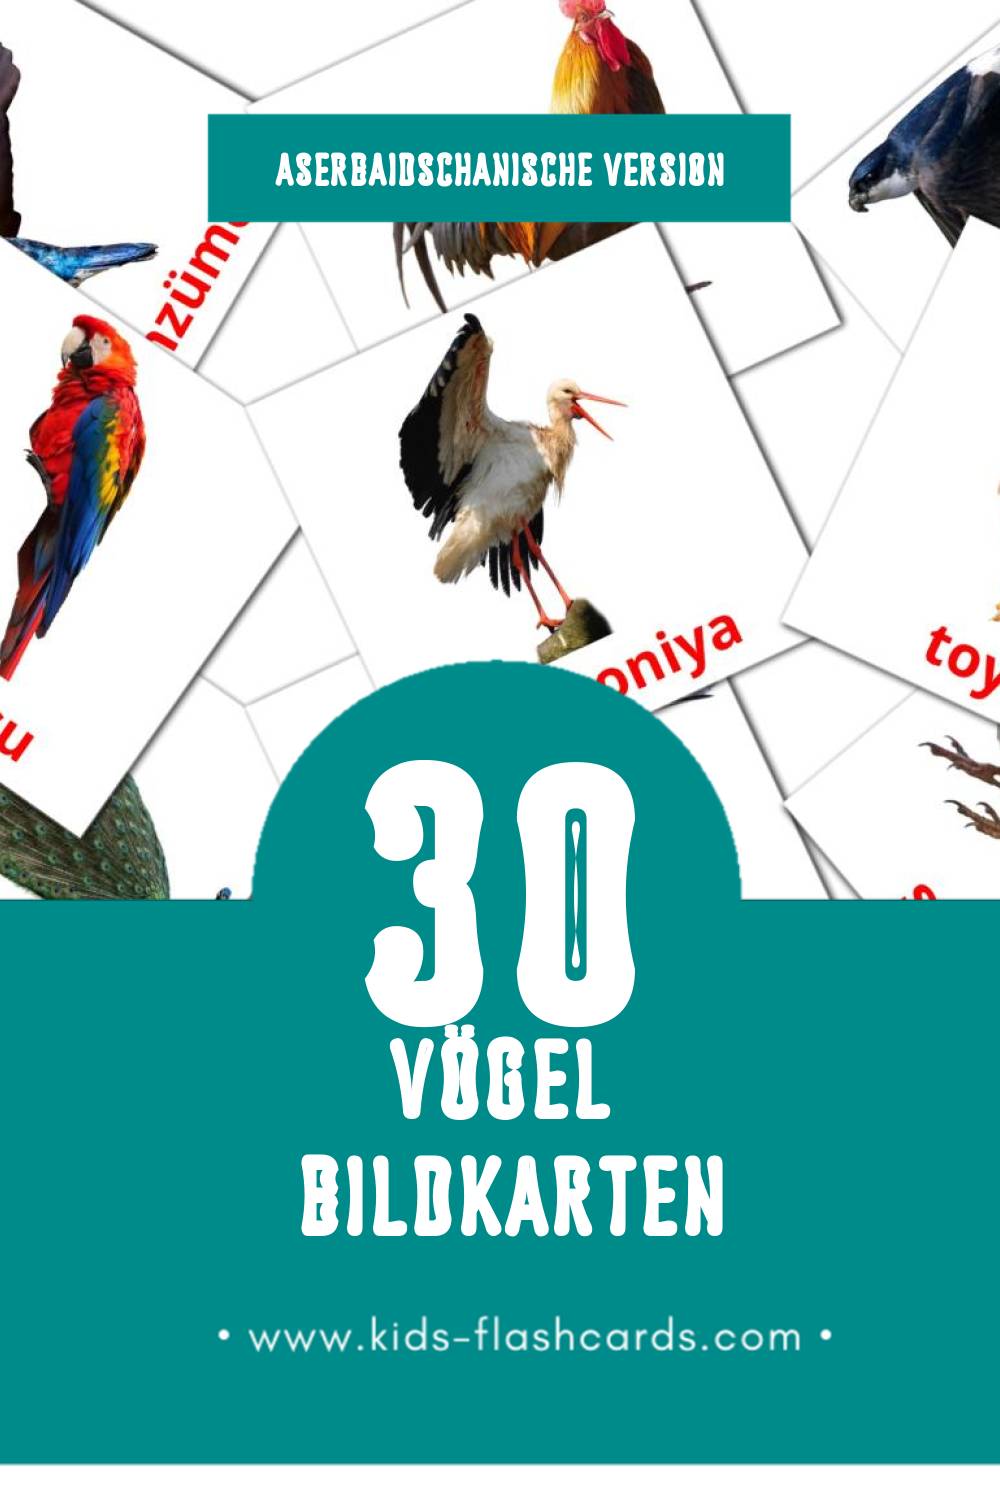 Visual Quşlar Flashcards für Kleinkinder (30 Karten in Aserbaidschanisch)